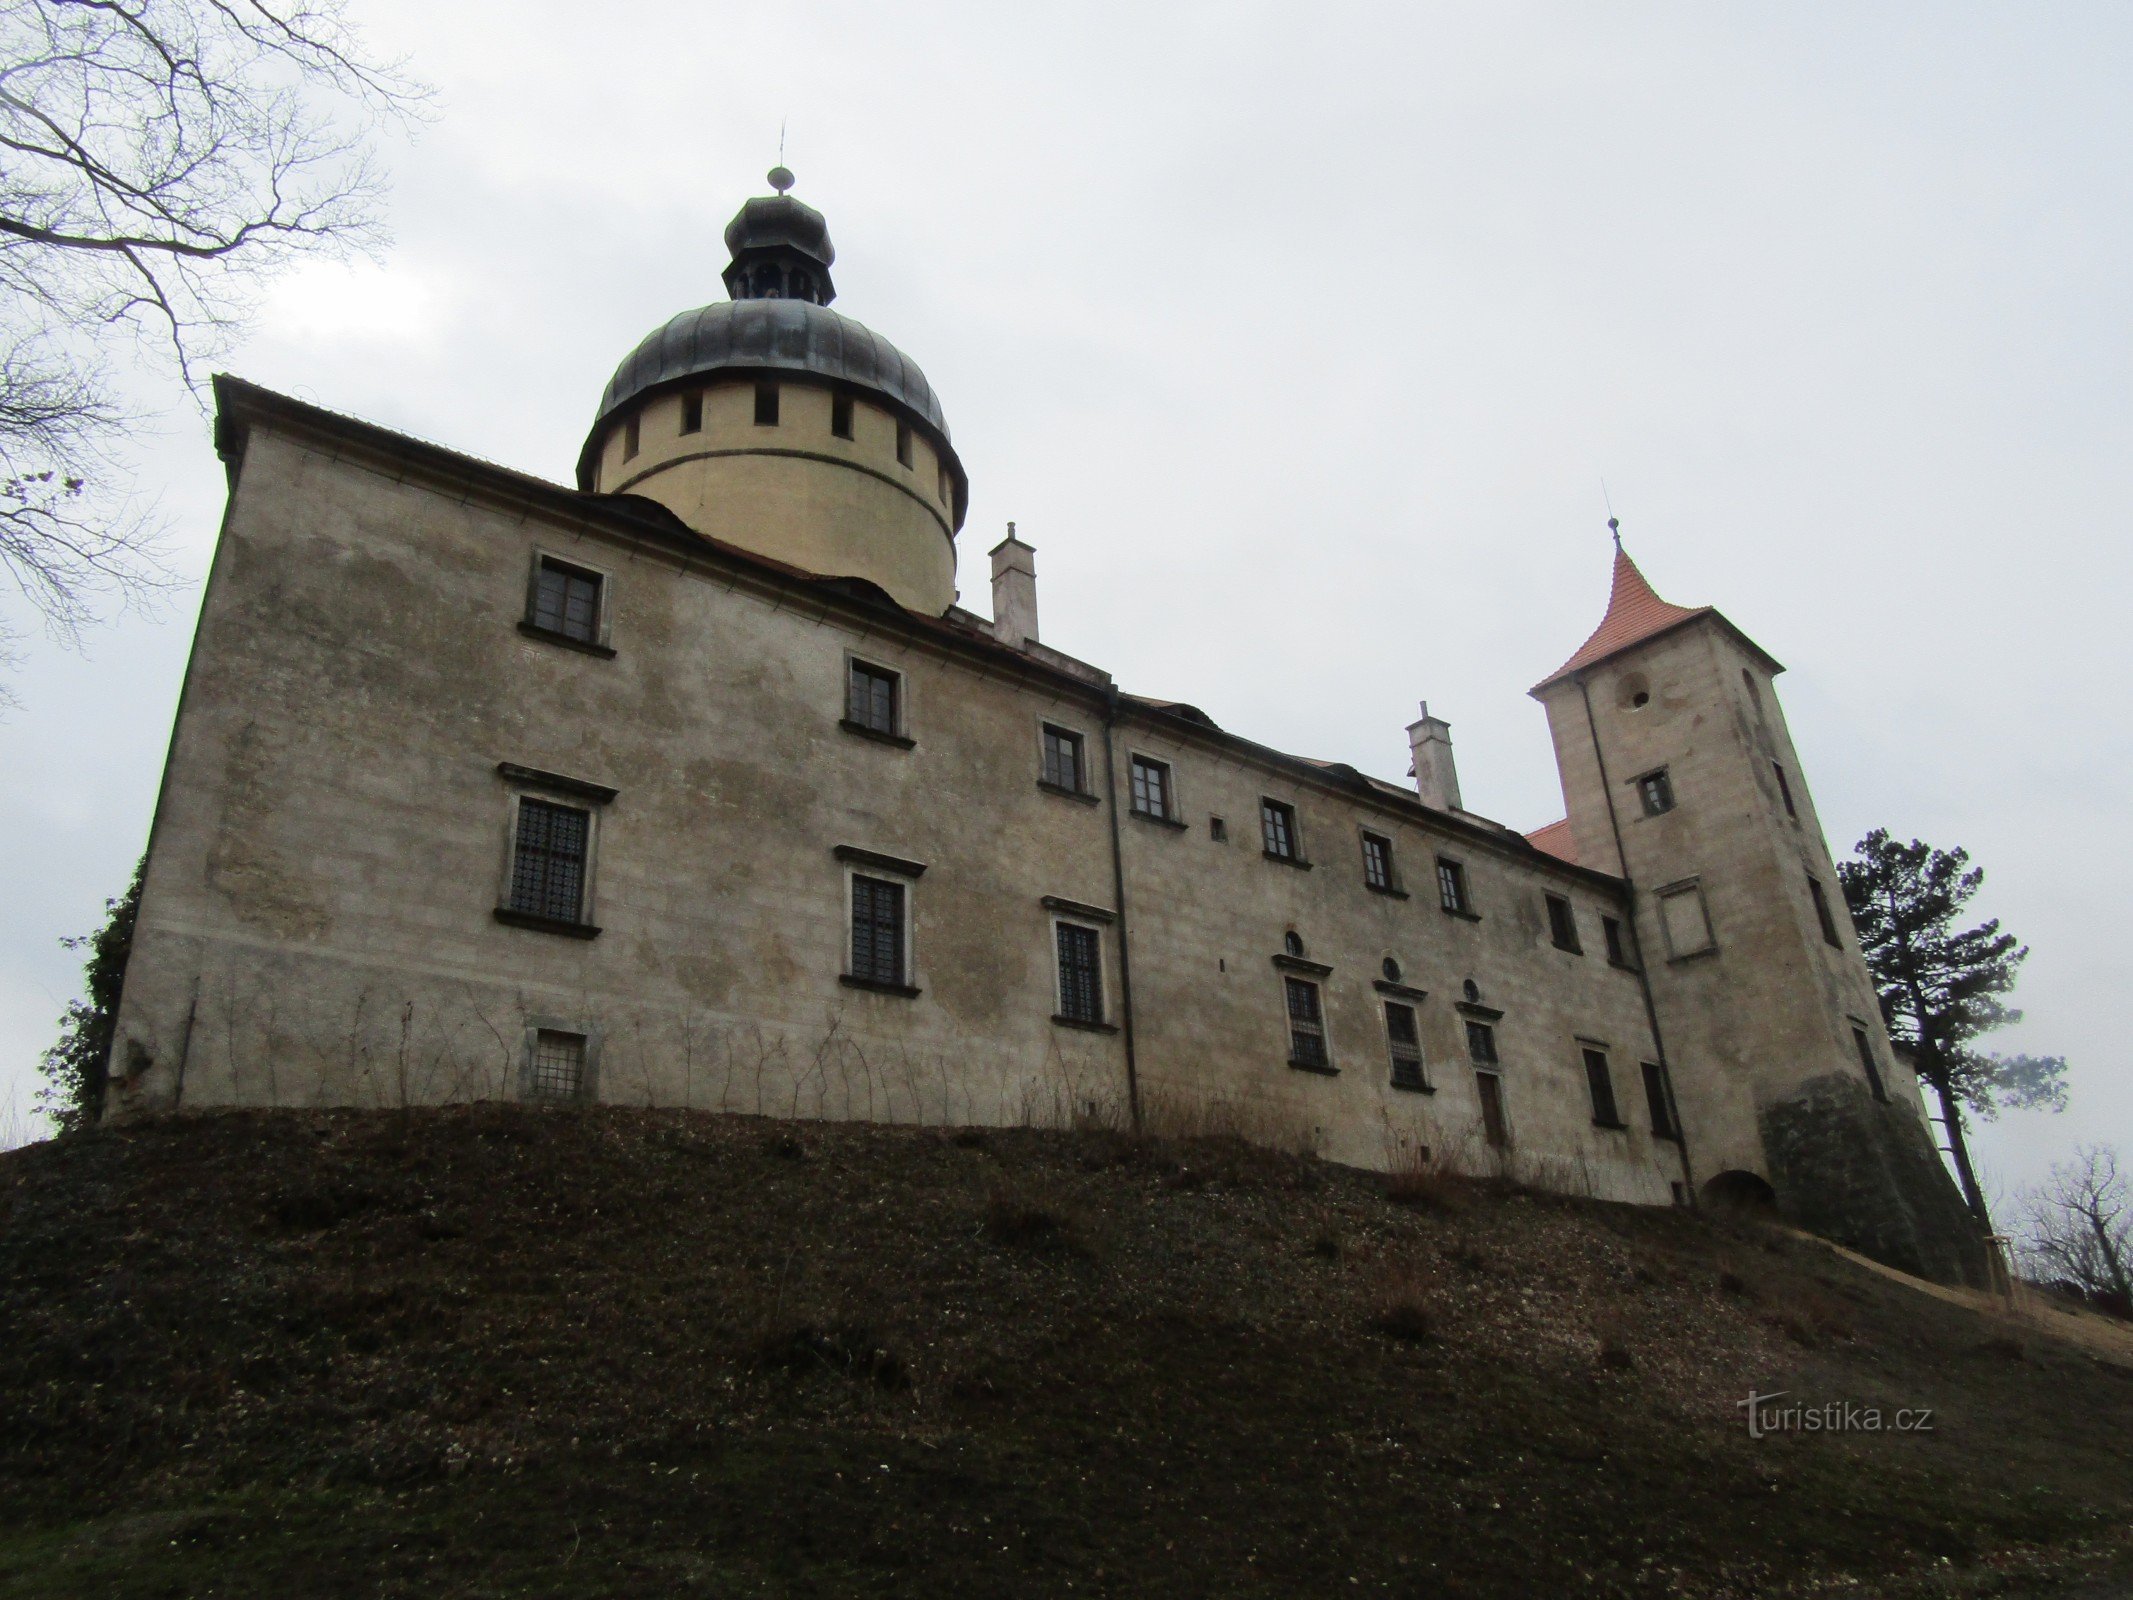 Château de Grabštejn renaissant